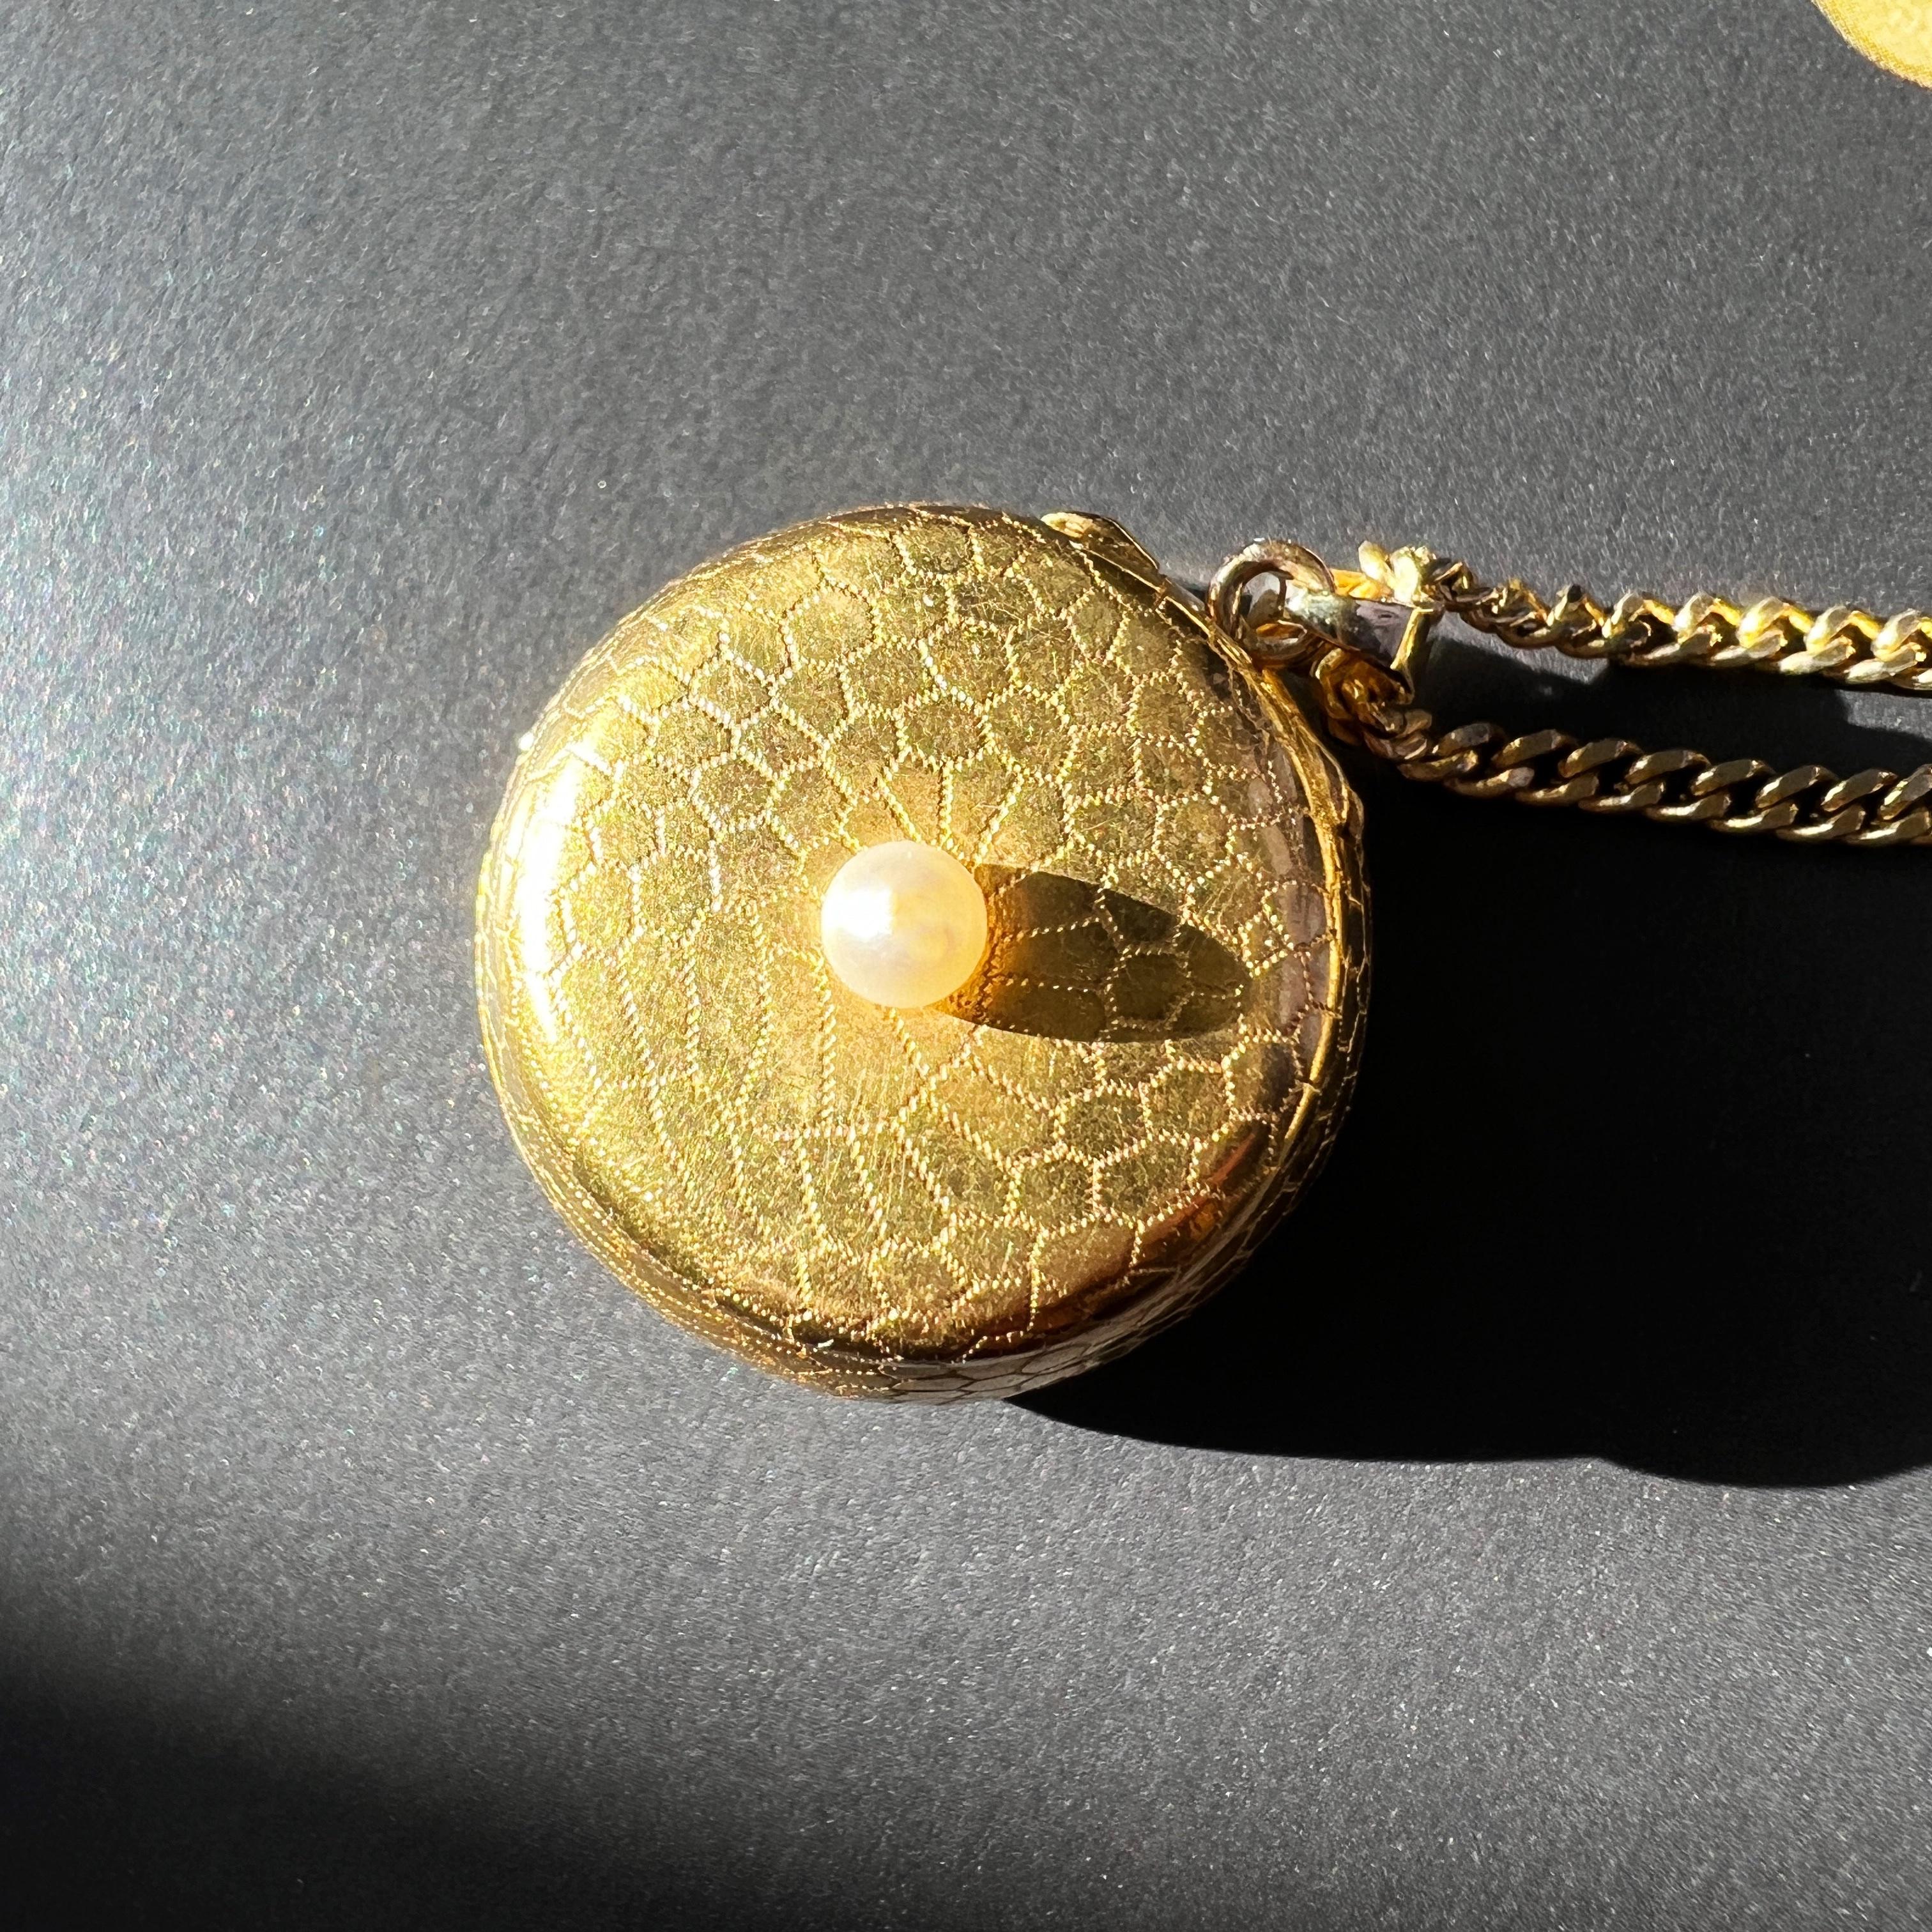 Nous vendons un très rare pendentif de boîte à parfum ancienne en or 18 carats, orné de motifs géométriques complexes en or rappelant de délicats motifs de miel.

En perçant ses secrets, on découvre un compartiment caché, séparé par une fenêtre